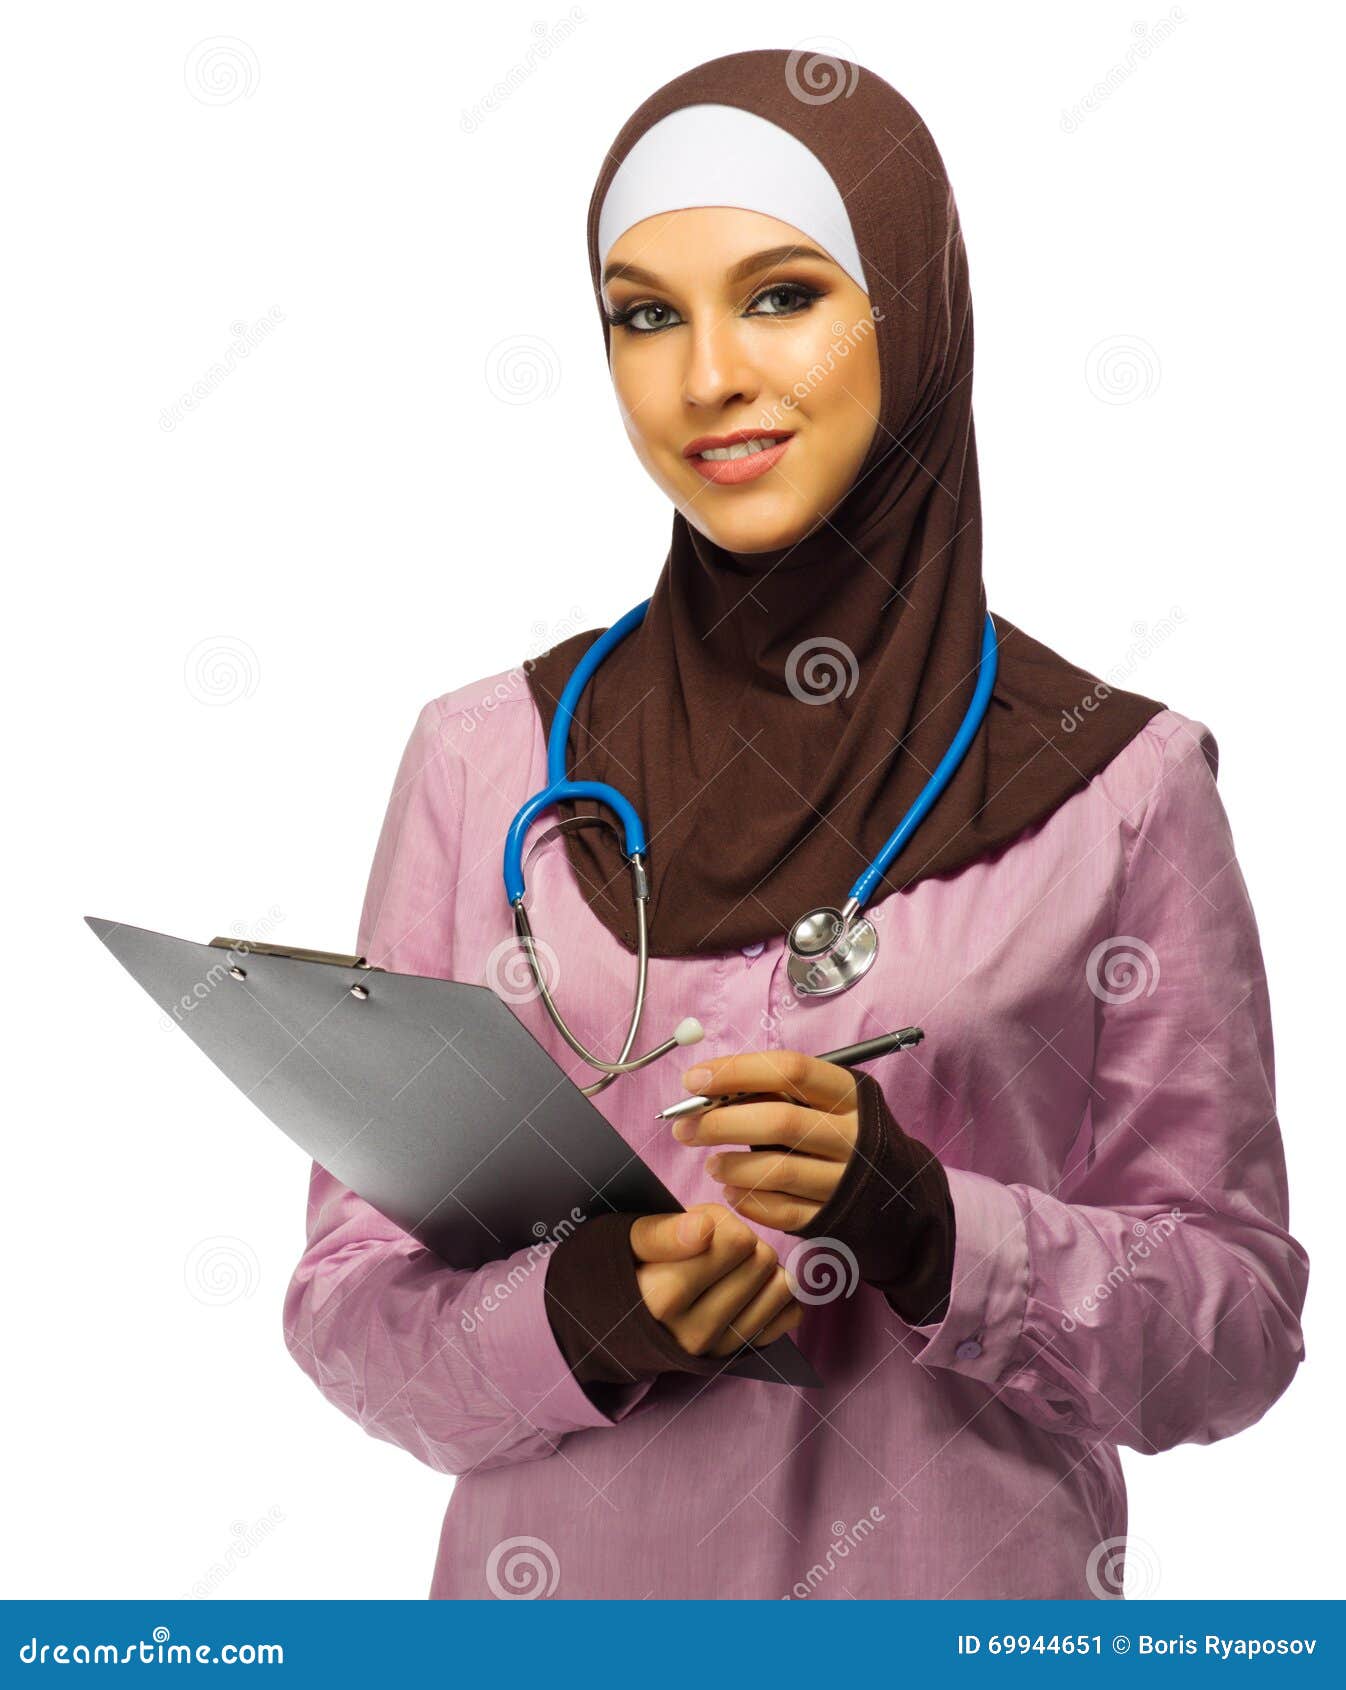 Врач мусульман. Мусульманка доктор. Медики мусульмане. Мусульманка женщина взрослая. Мусульманская врач известная.